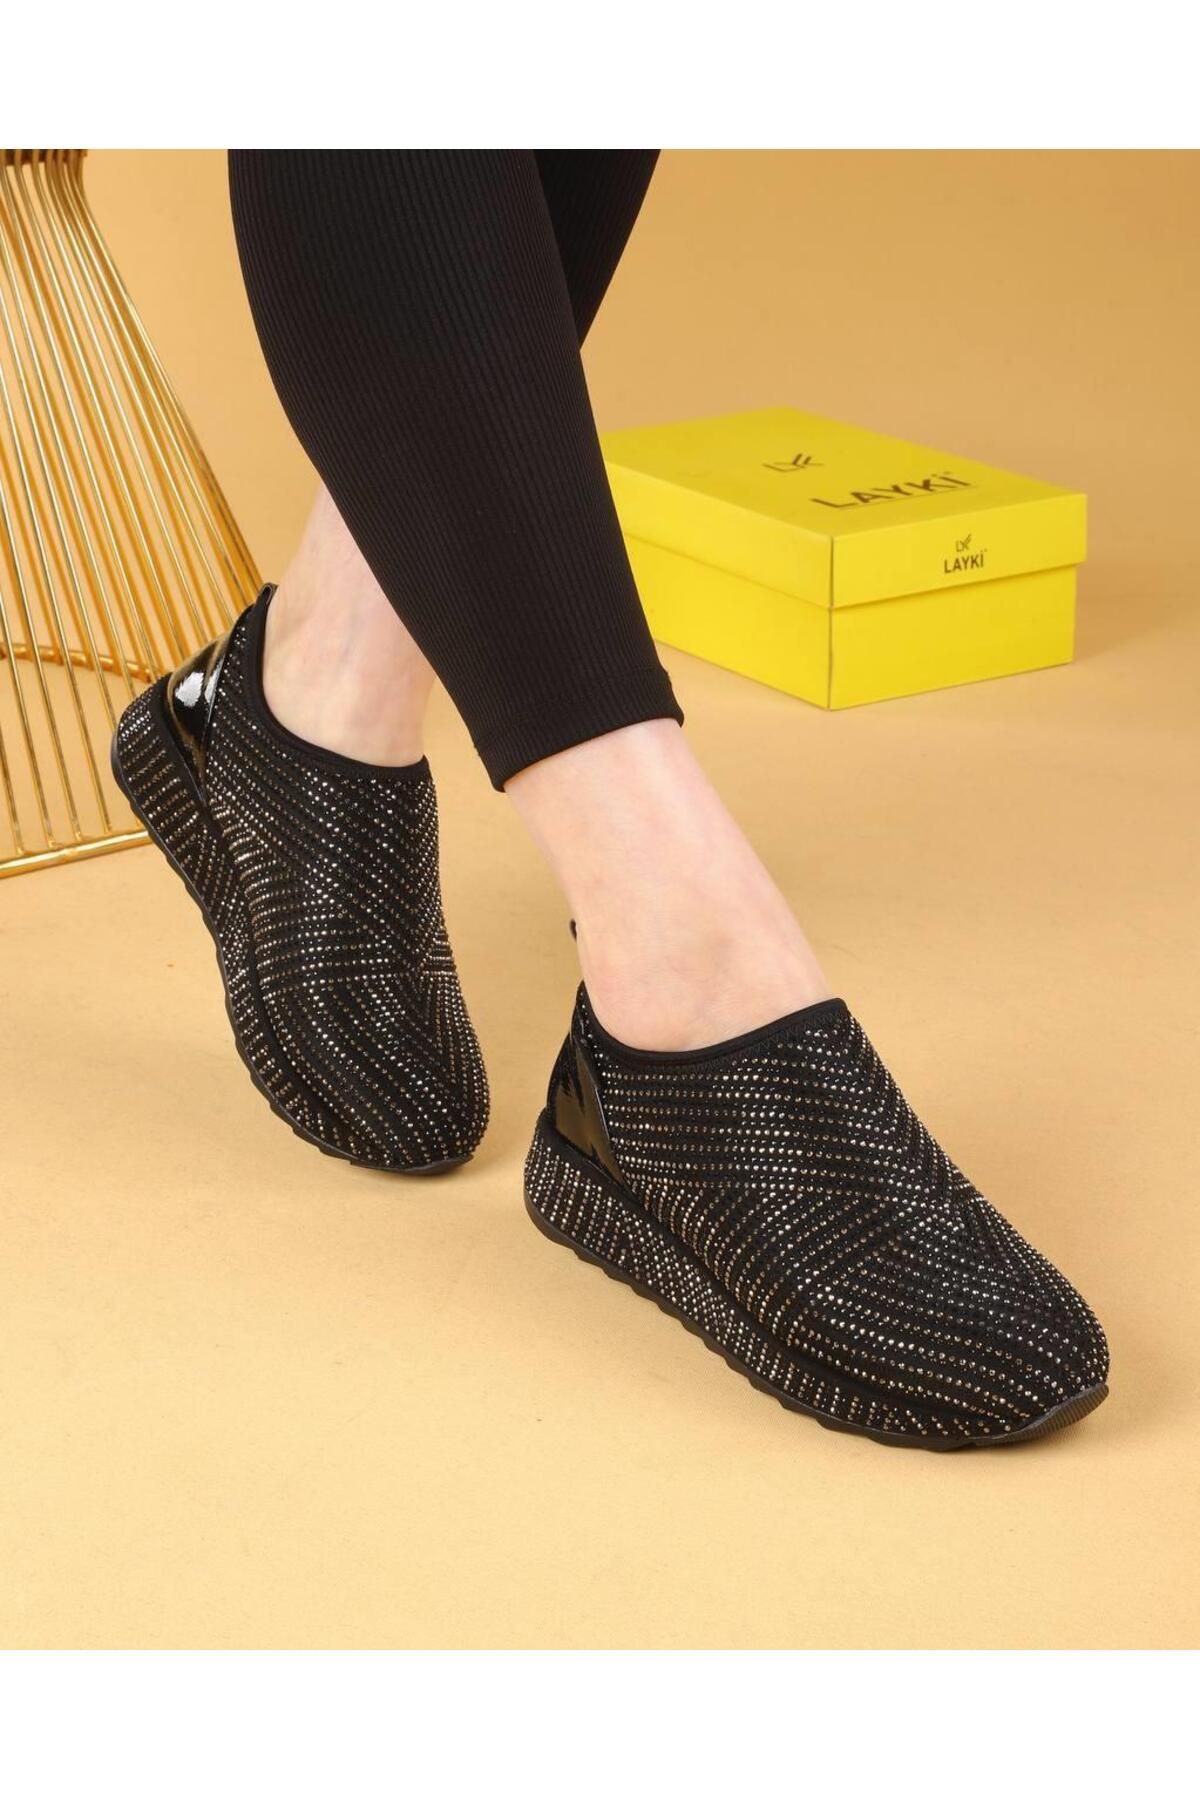 layki Hela Siyah Renkli Platin Taşlı Kadın Yürüyüş Ayakkabısı